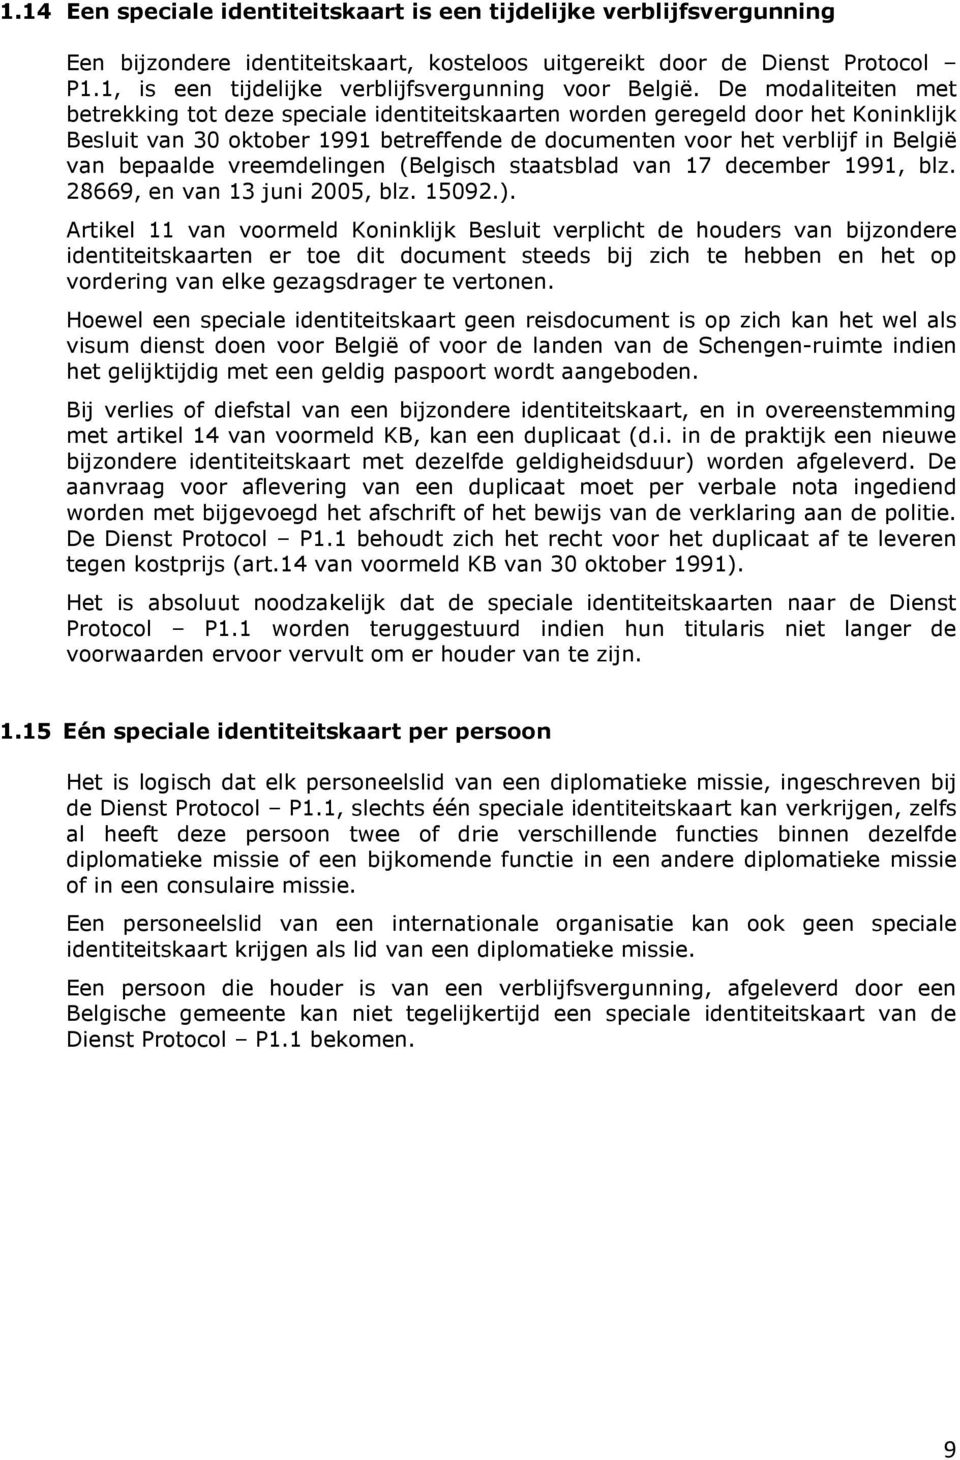 De modaliteiten met betrekking tot deze speciale identiteitskaarten worden geregeld door het Koninklijk Besluit van 30 oktober 1991 betreffende de documenten voor het verblijf in België van bepaalde